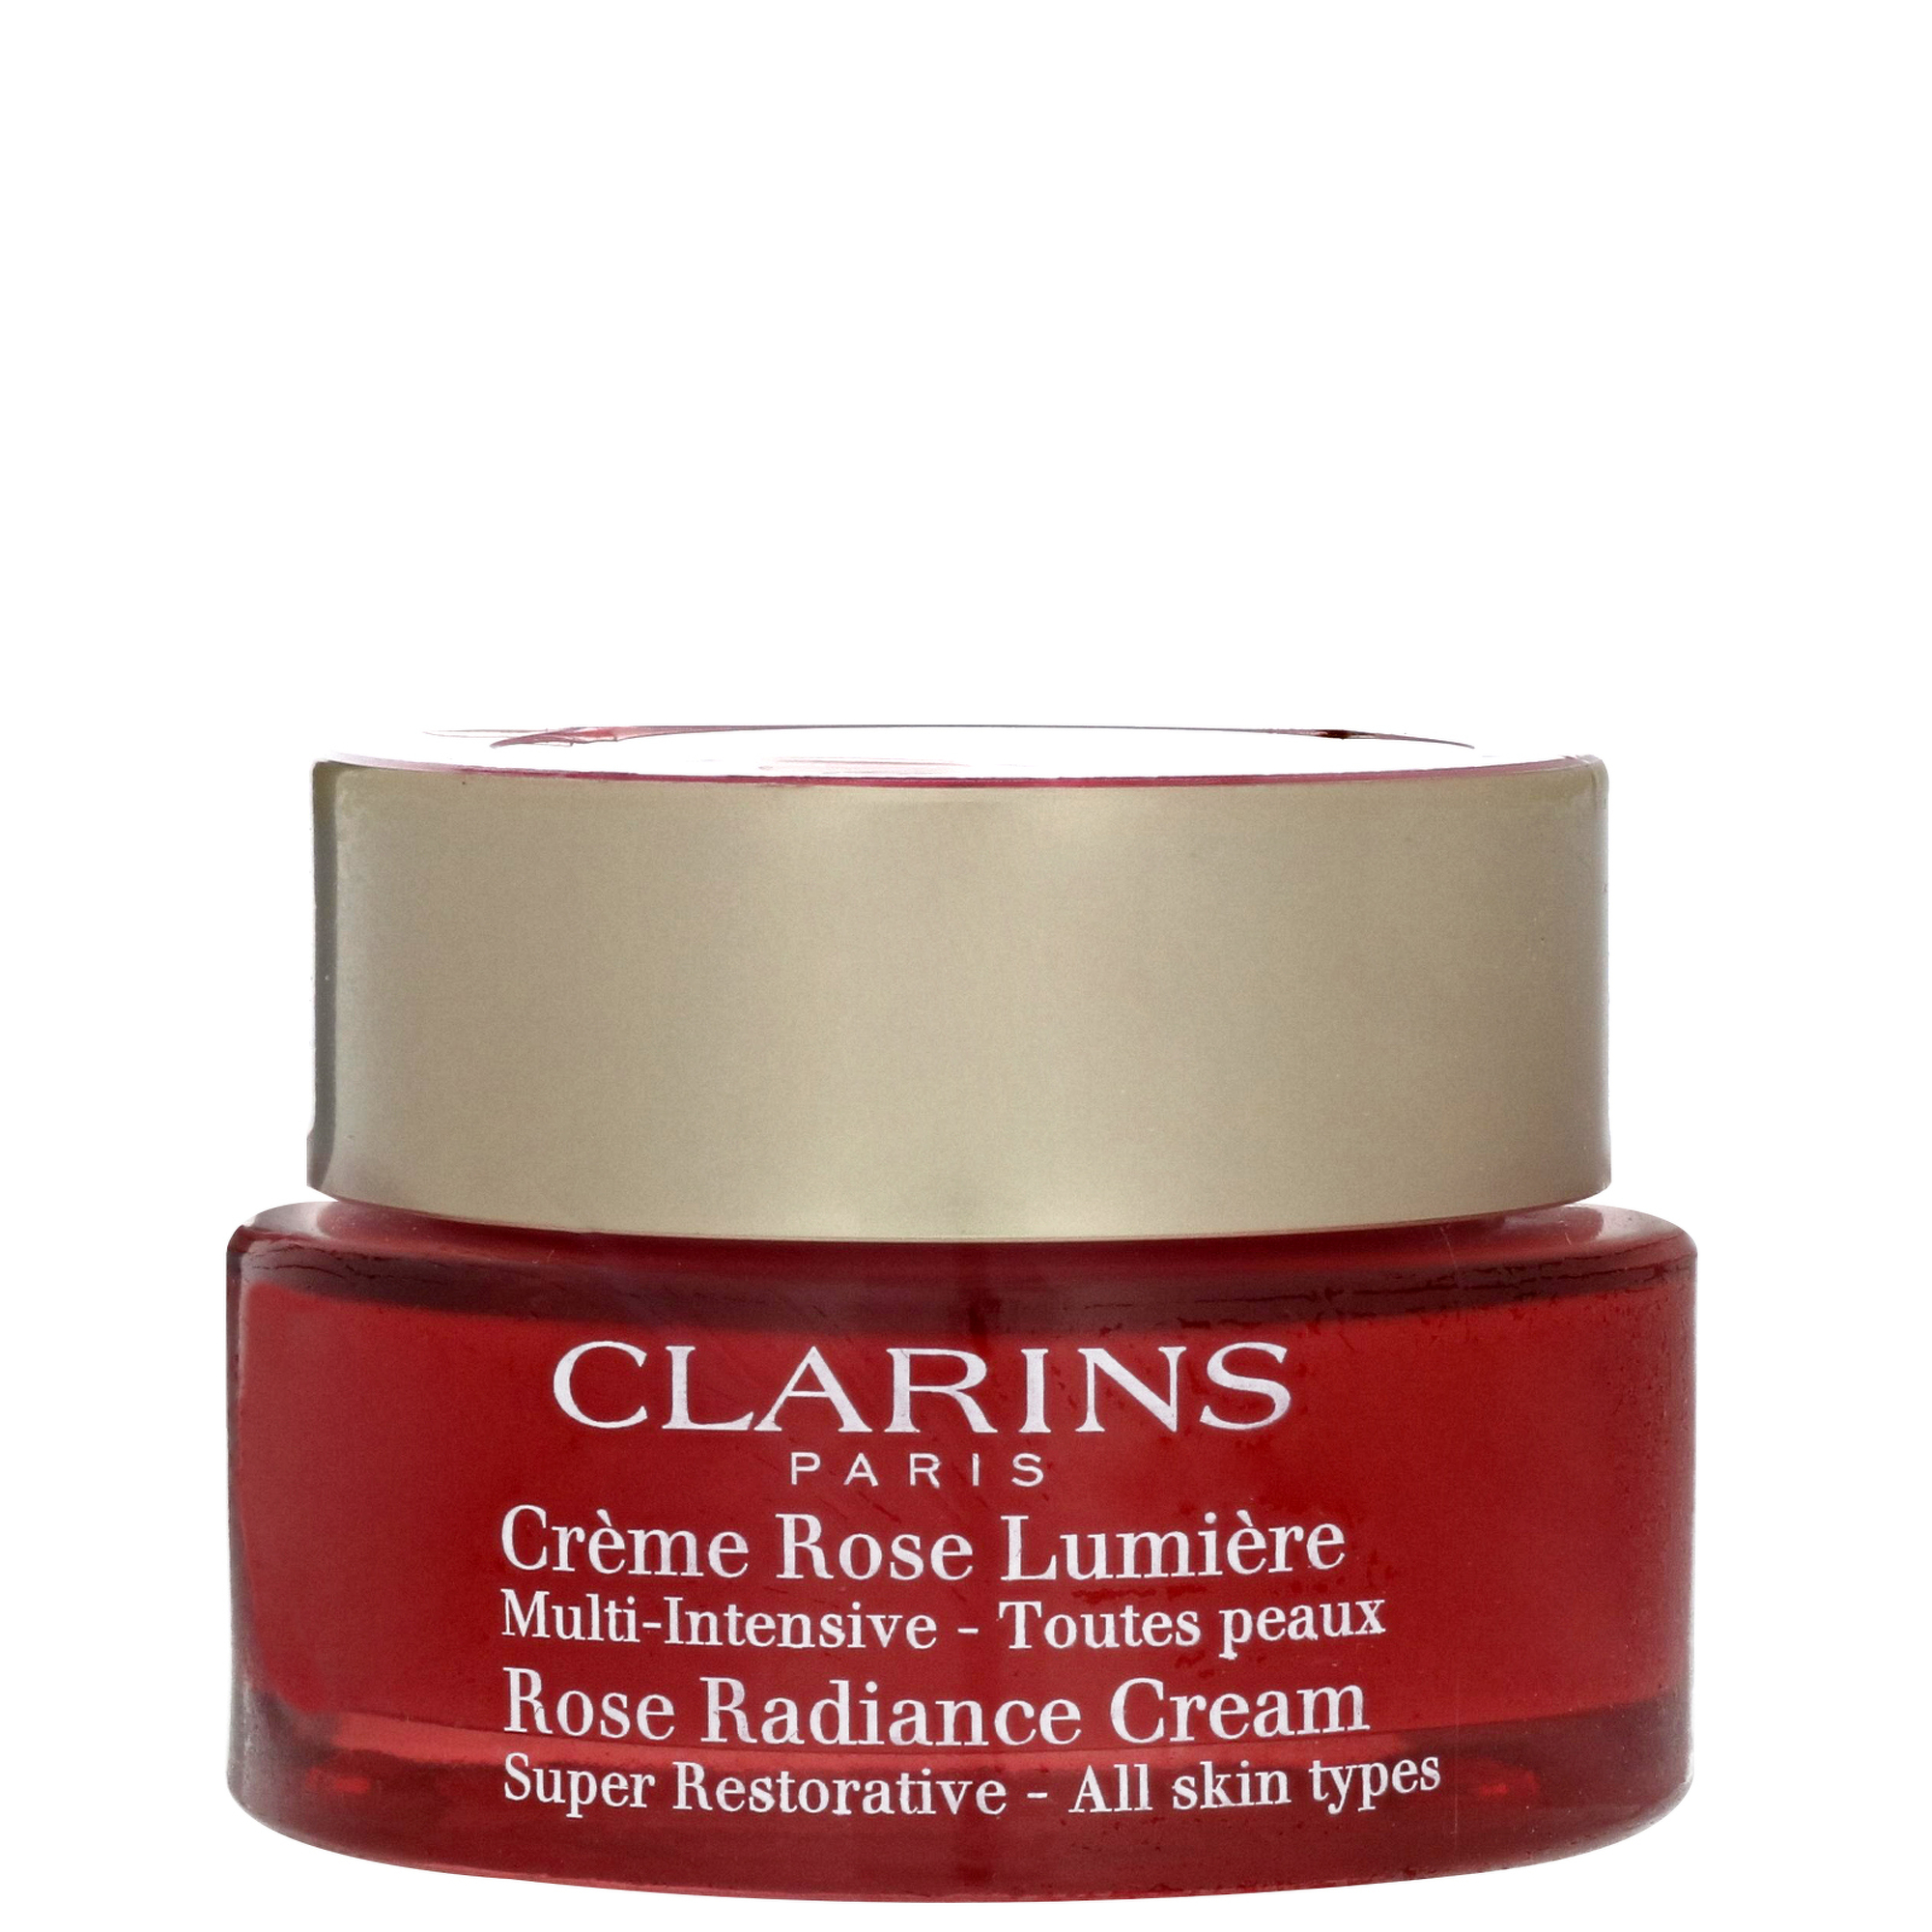 Photos - Cream / Lotion Clarins Super Restorative Rose Radiance Cream 50ml 